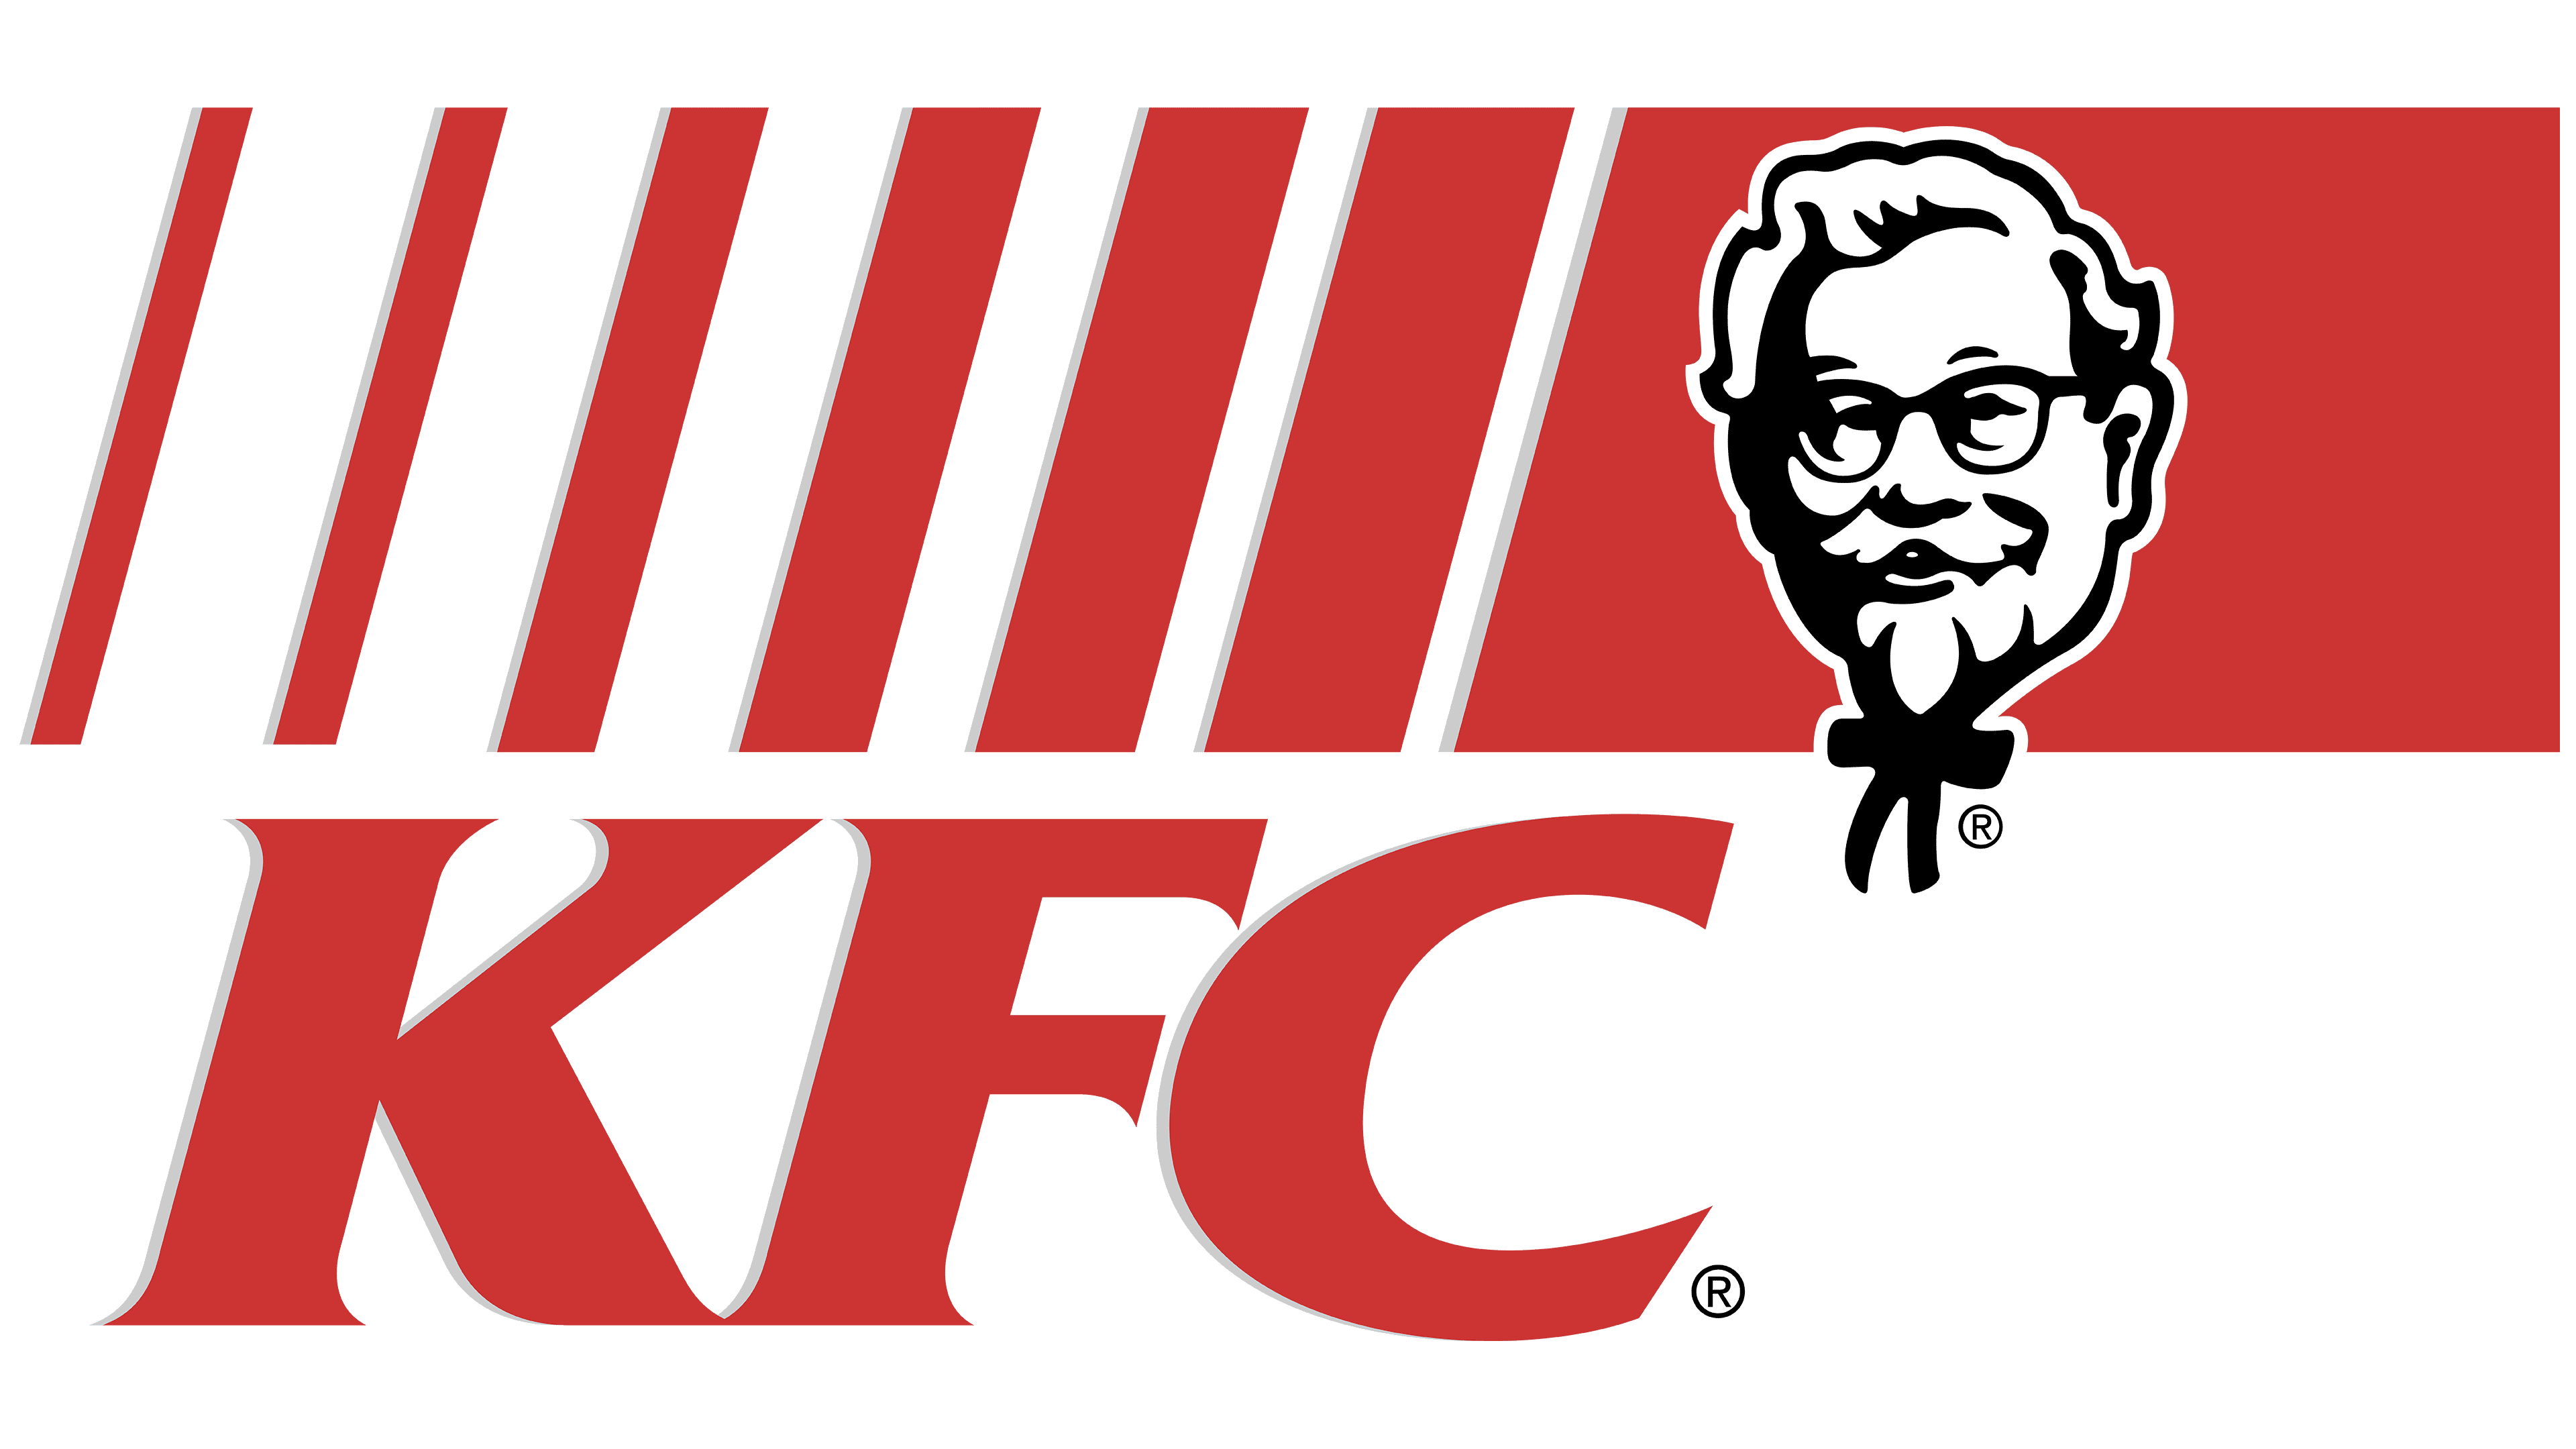 kfc logo 1997